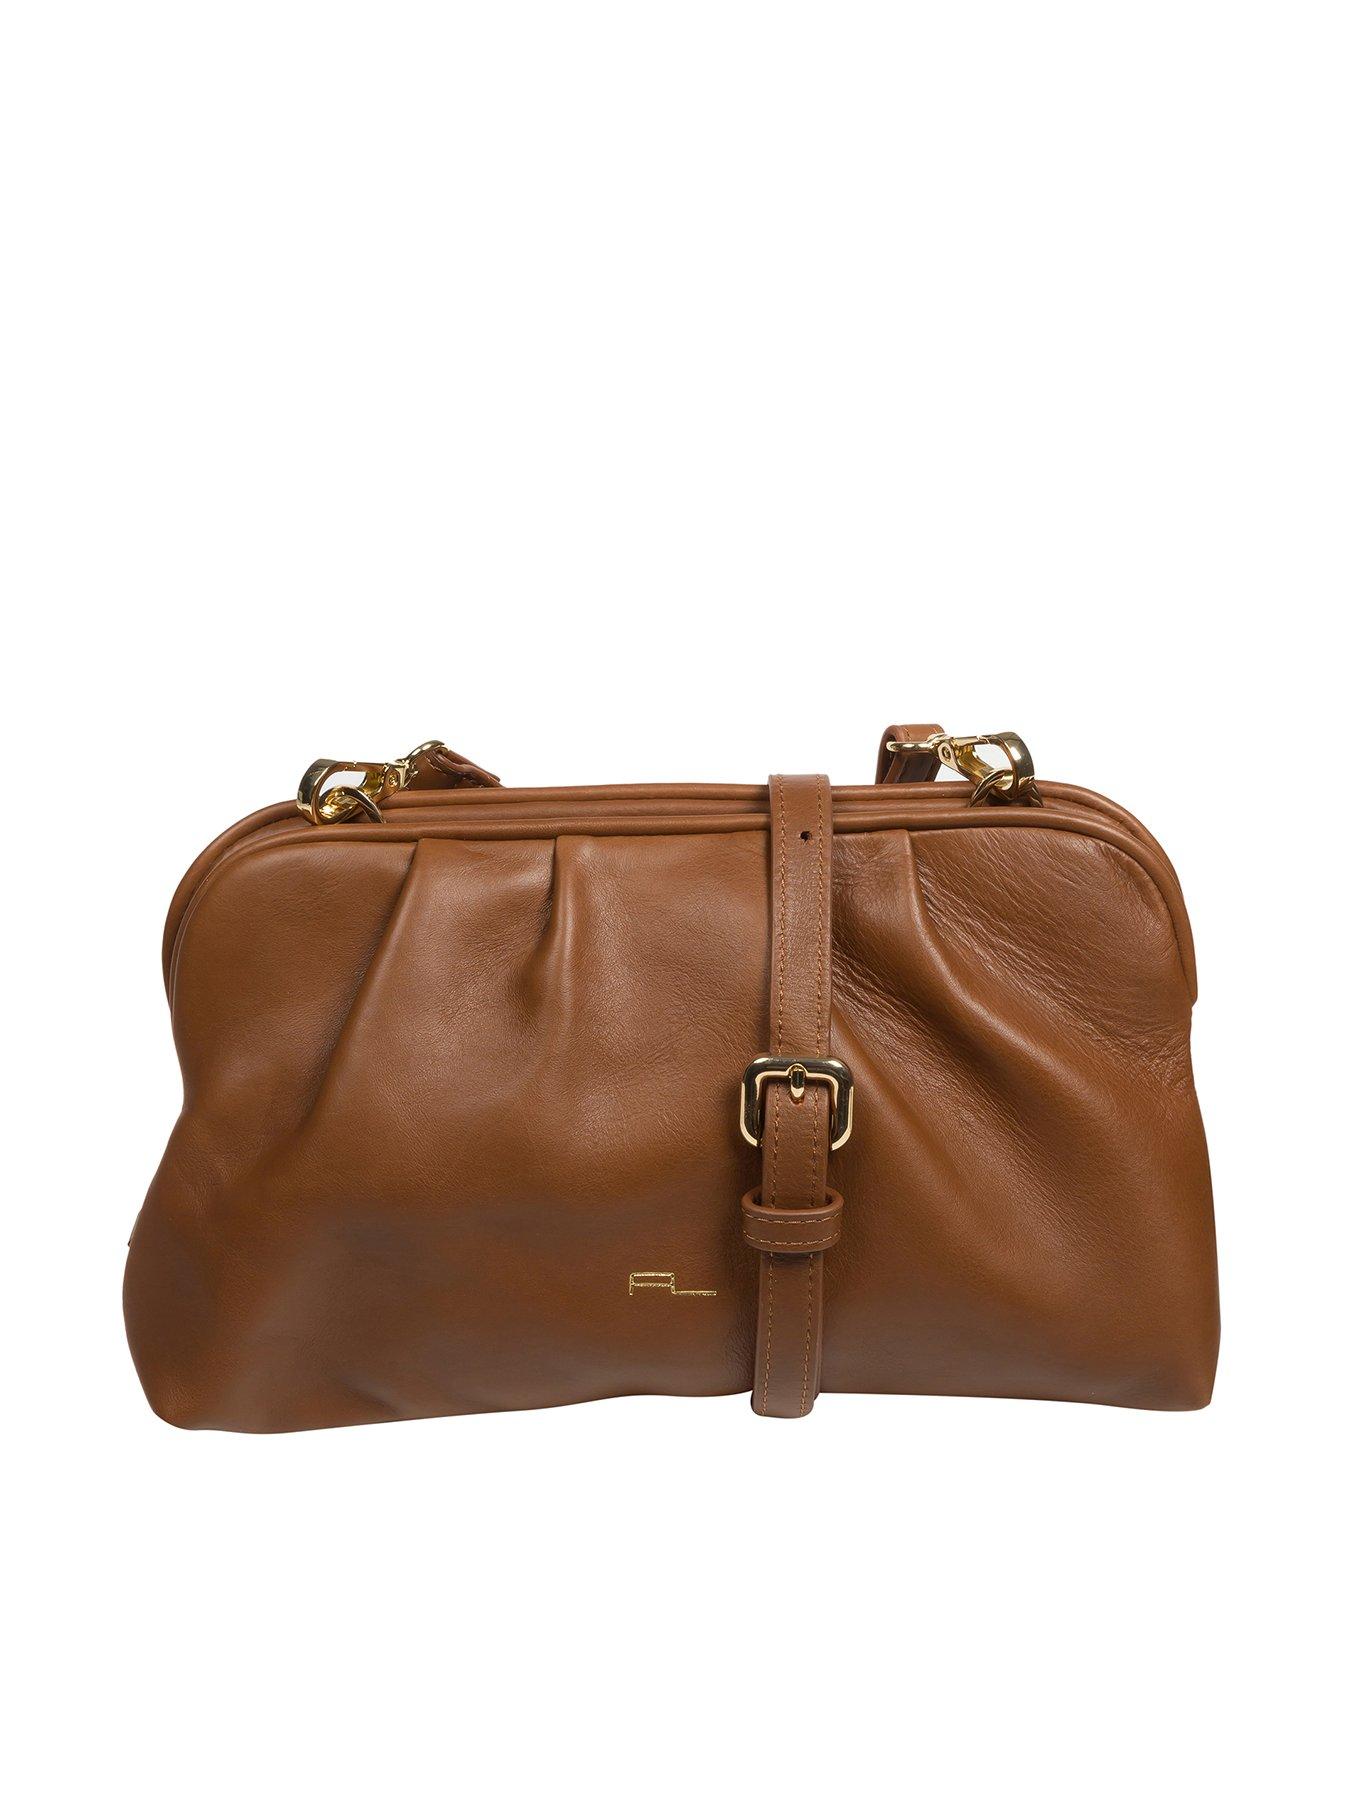 Personalised Luxury Nappa Leather Tassel Bag Charm